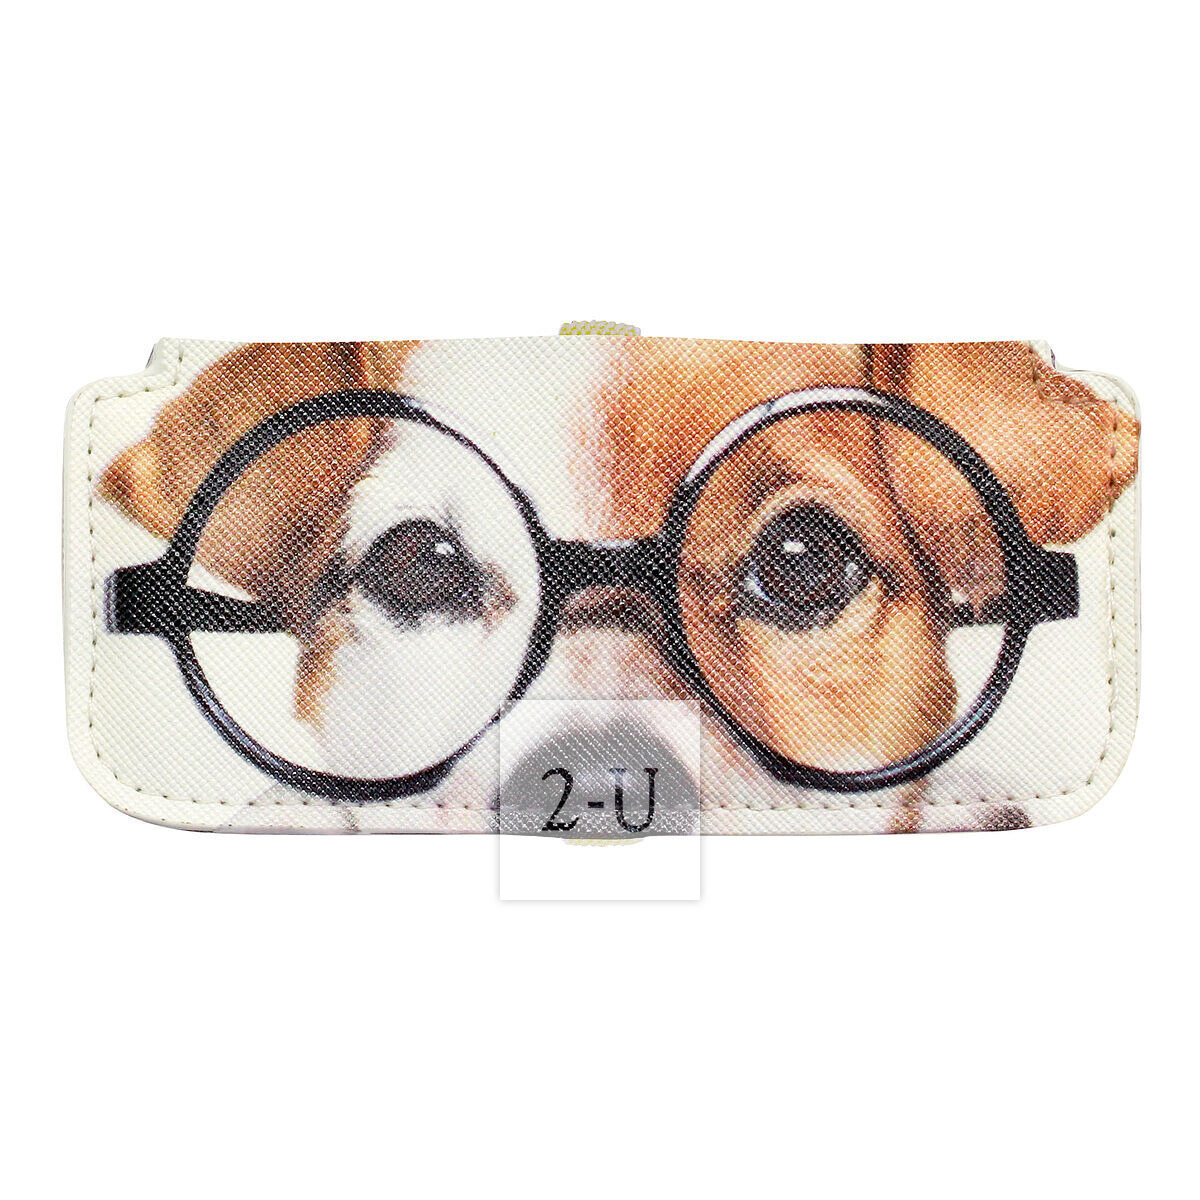 小巧眼鏡盒 動物圖案之傑剋儸素梗犬